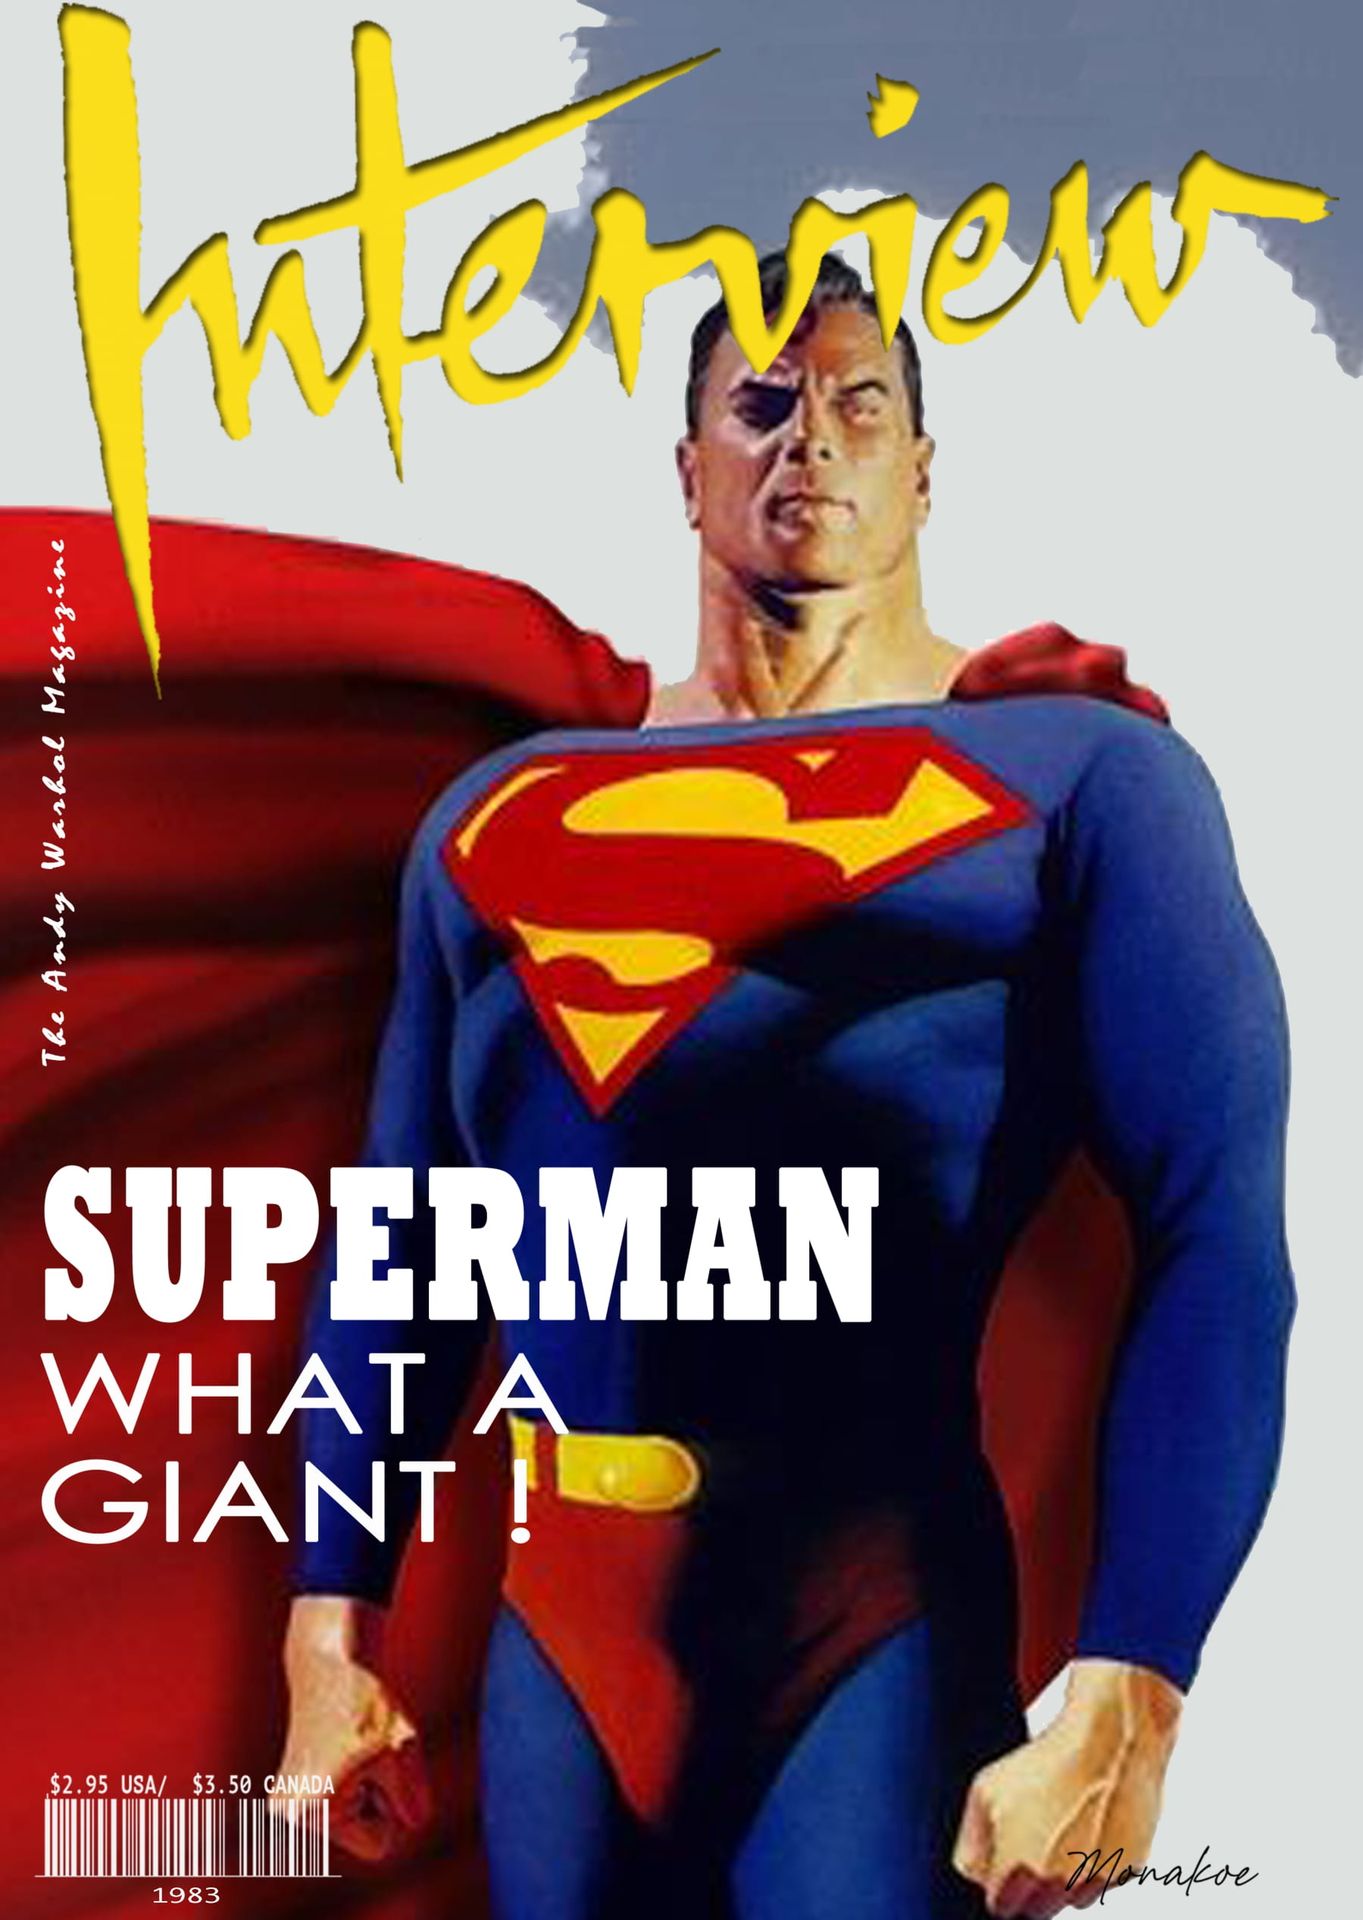 Null Interview the Andy Warhol Magazine (nach), Superman, Monakoe, gedruckt auf &hellip;